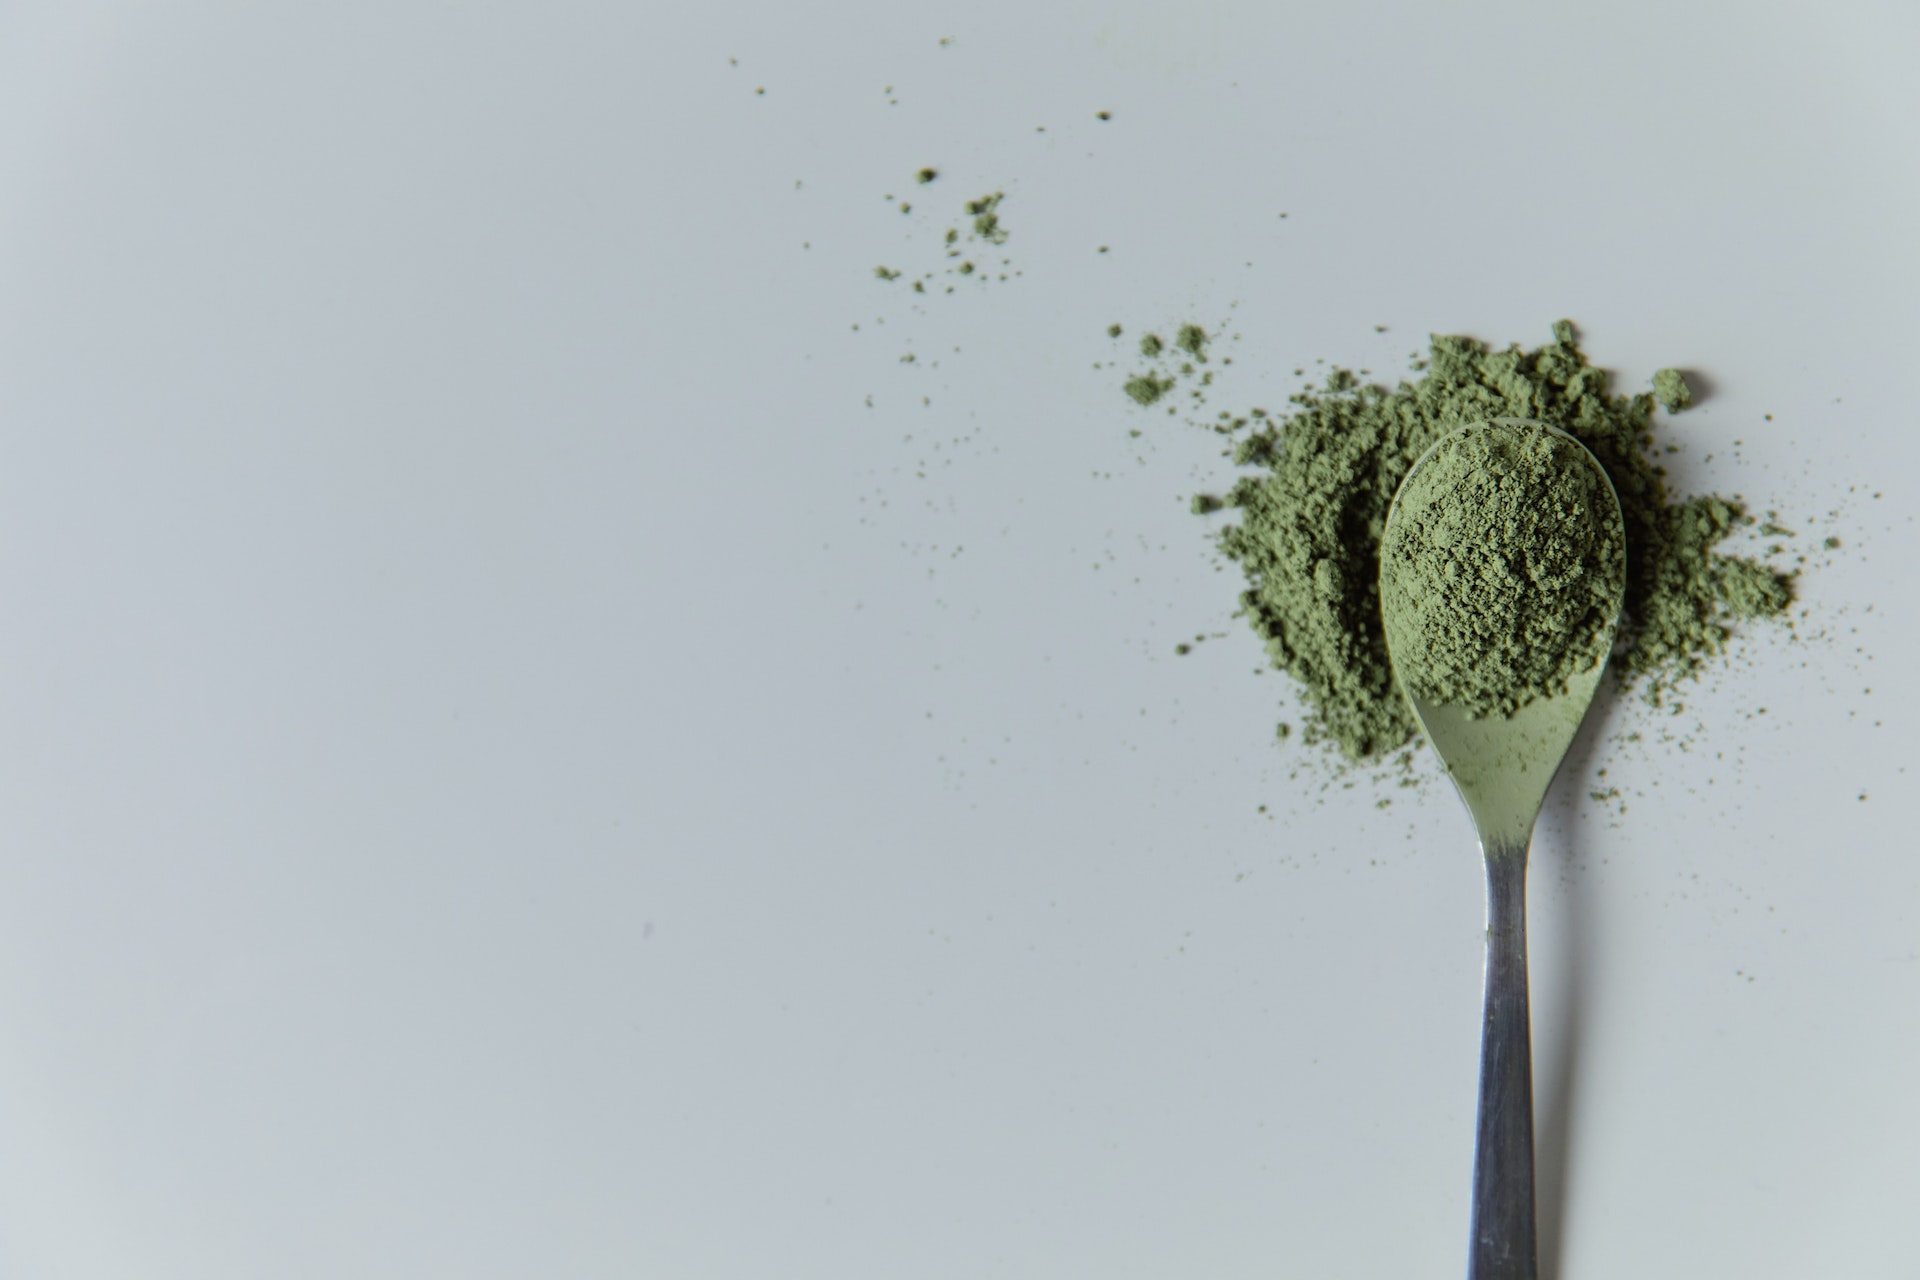 Spoon of green kratom powder